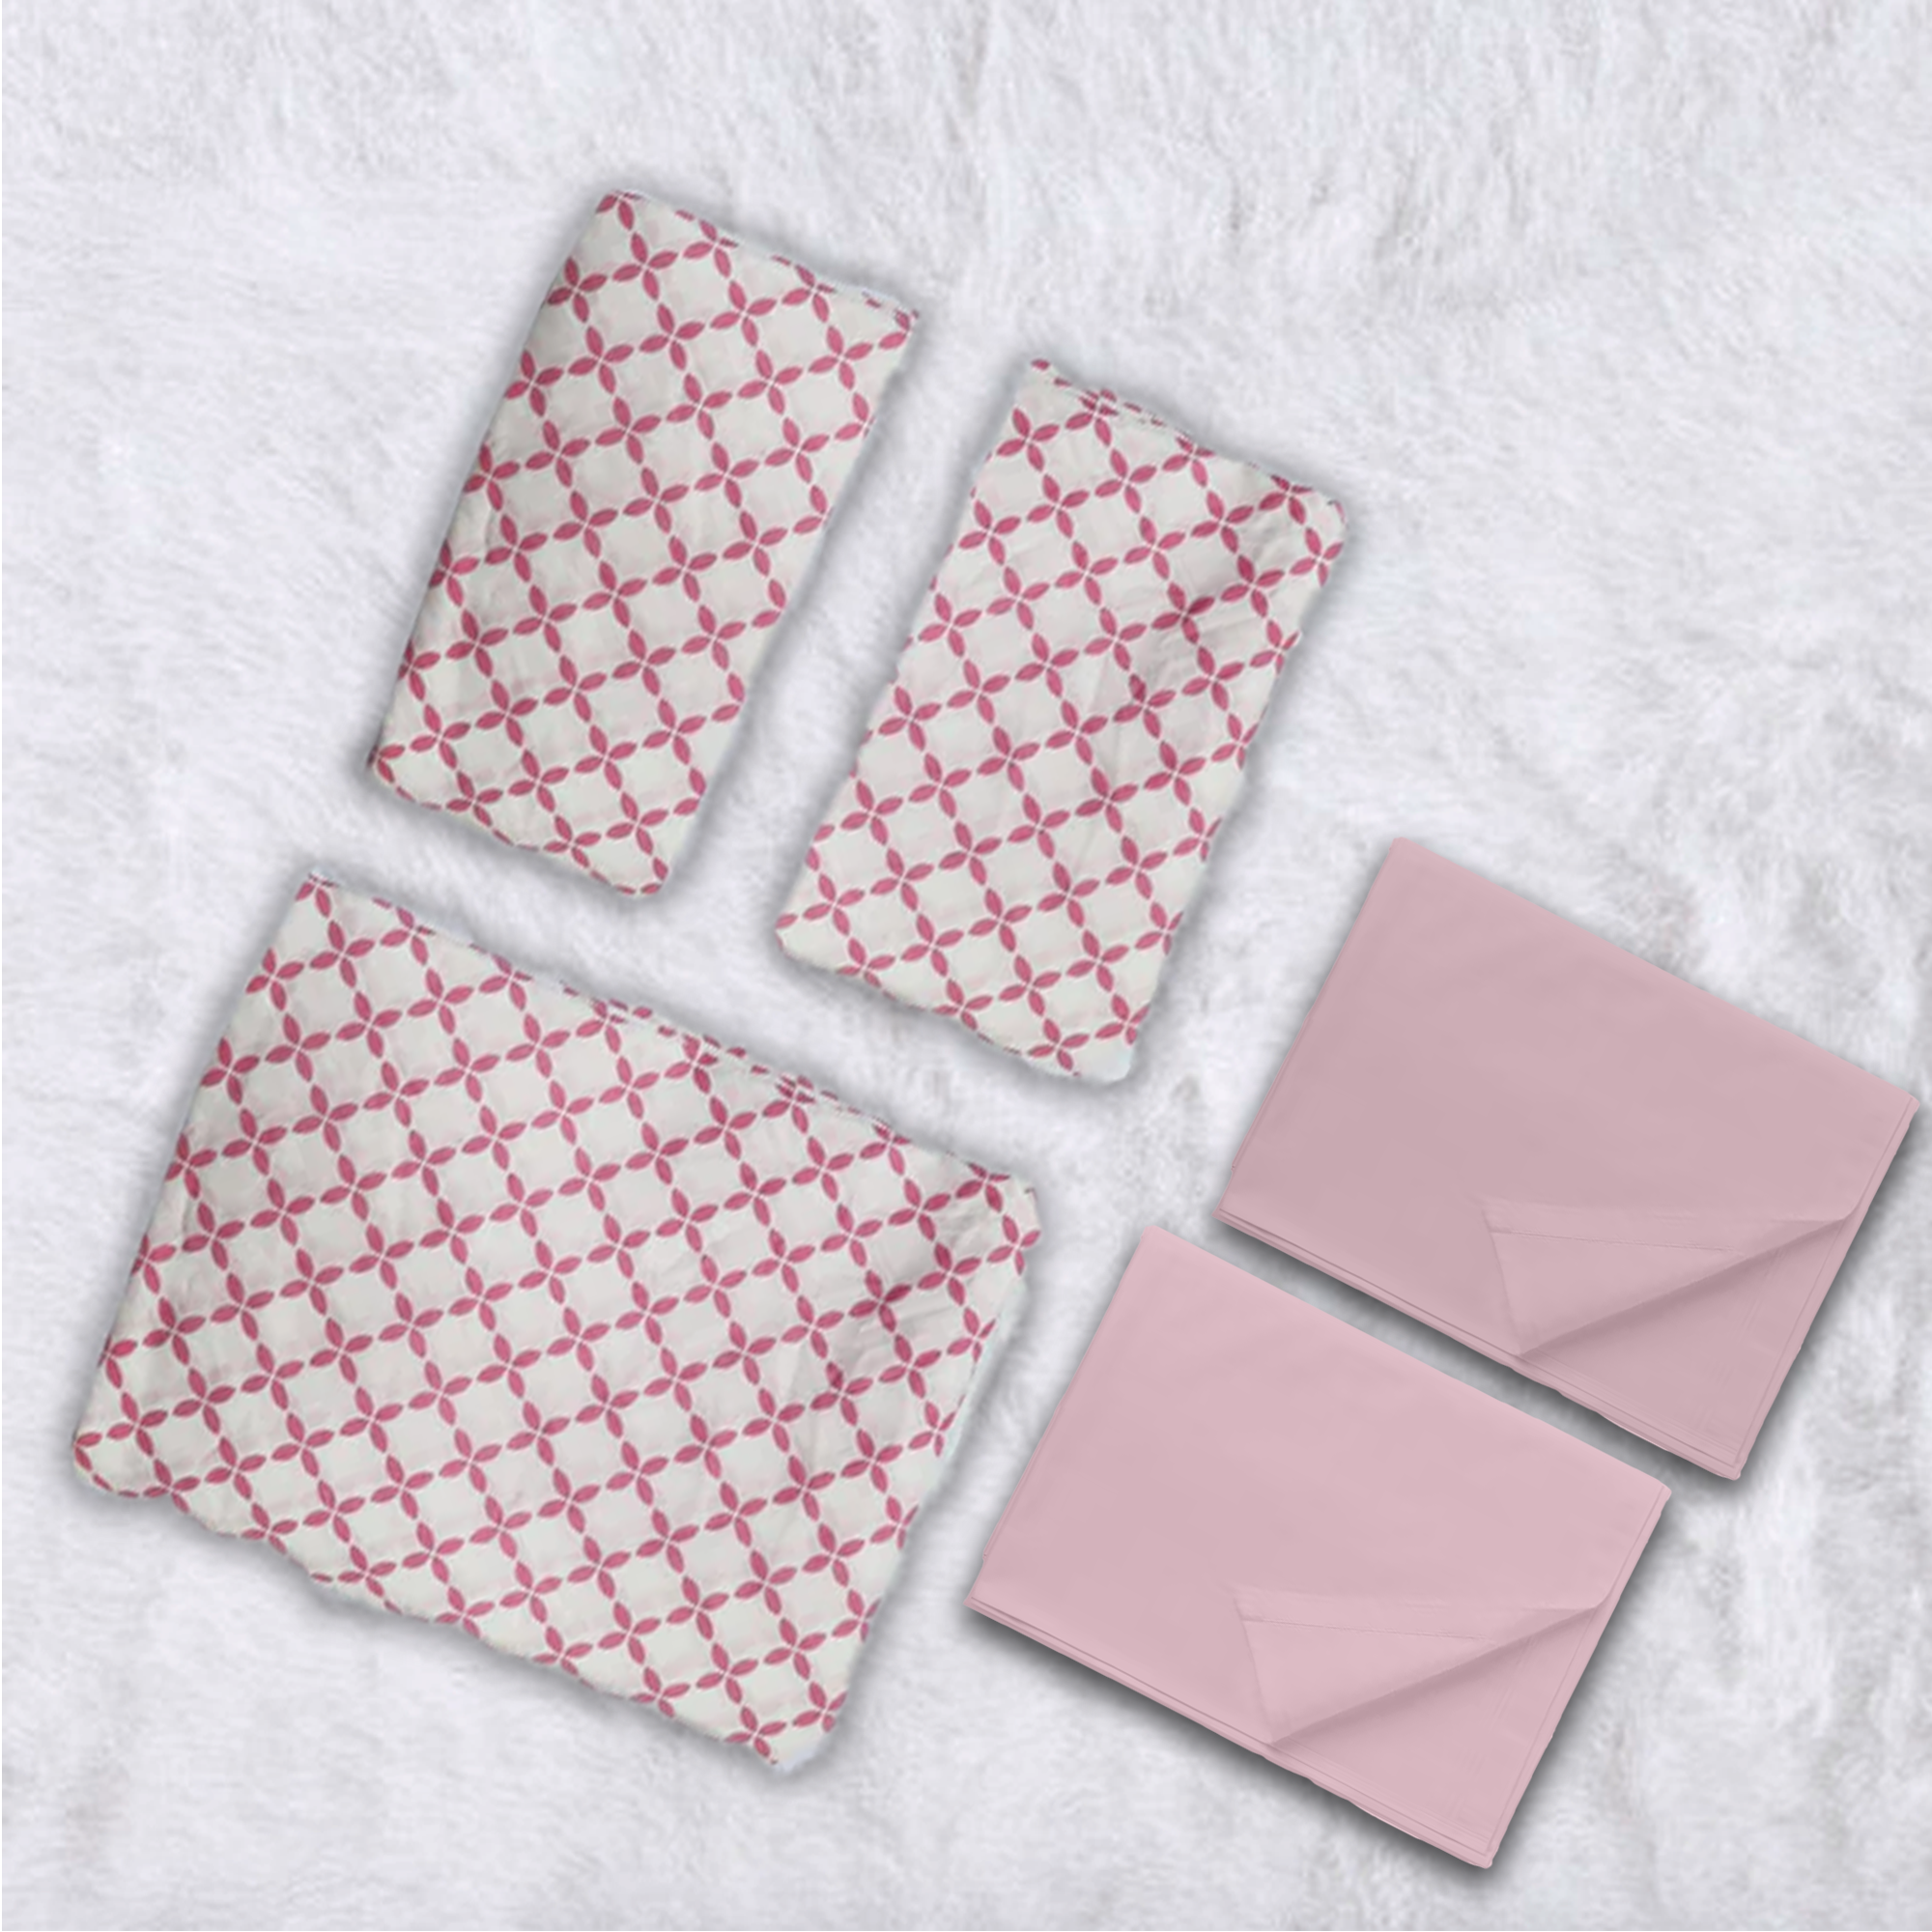 Pink Cascade Cotton 200 TC Bedsheet + 4 Pillow Covers